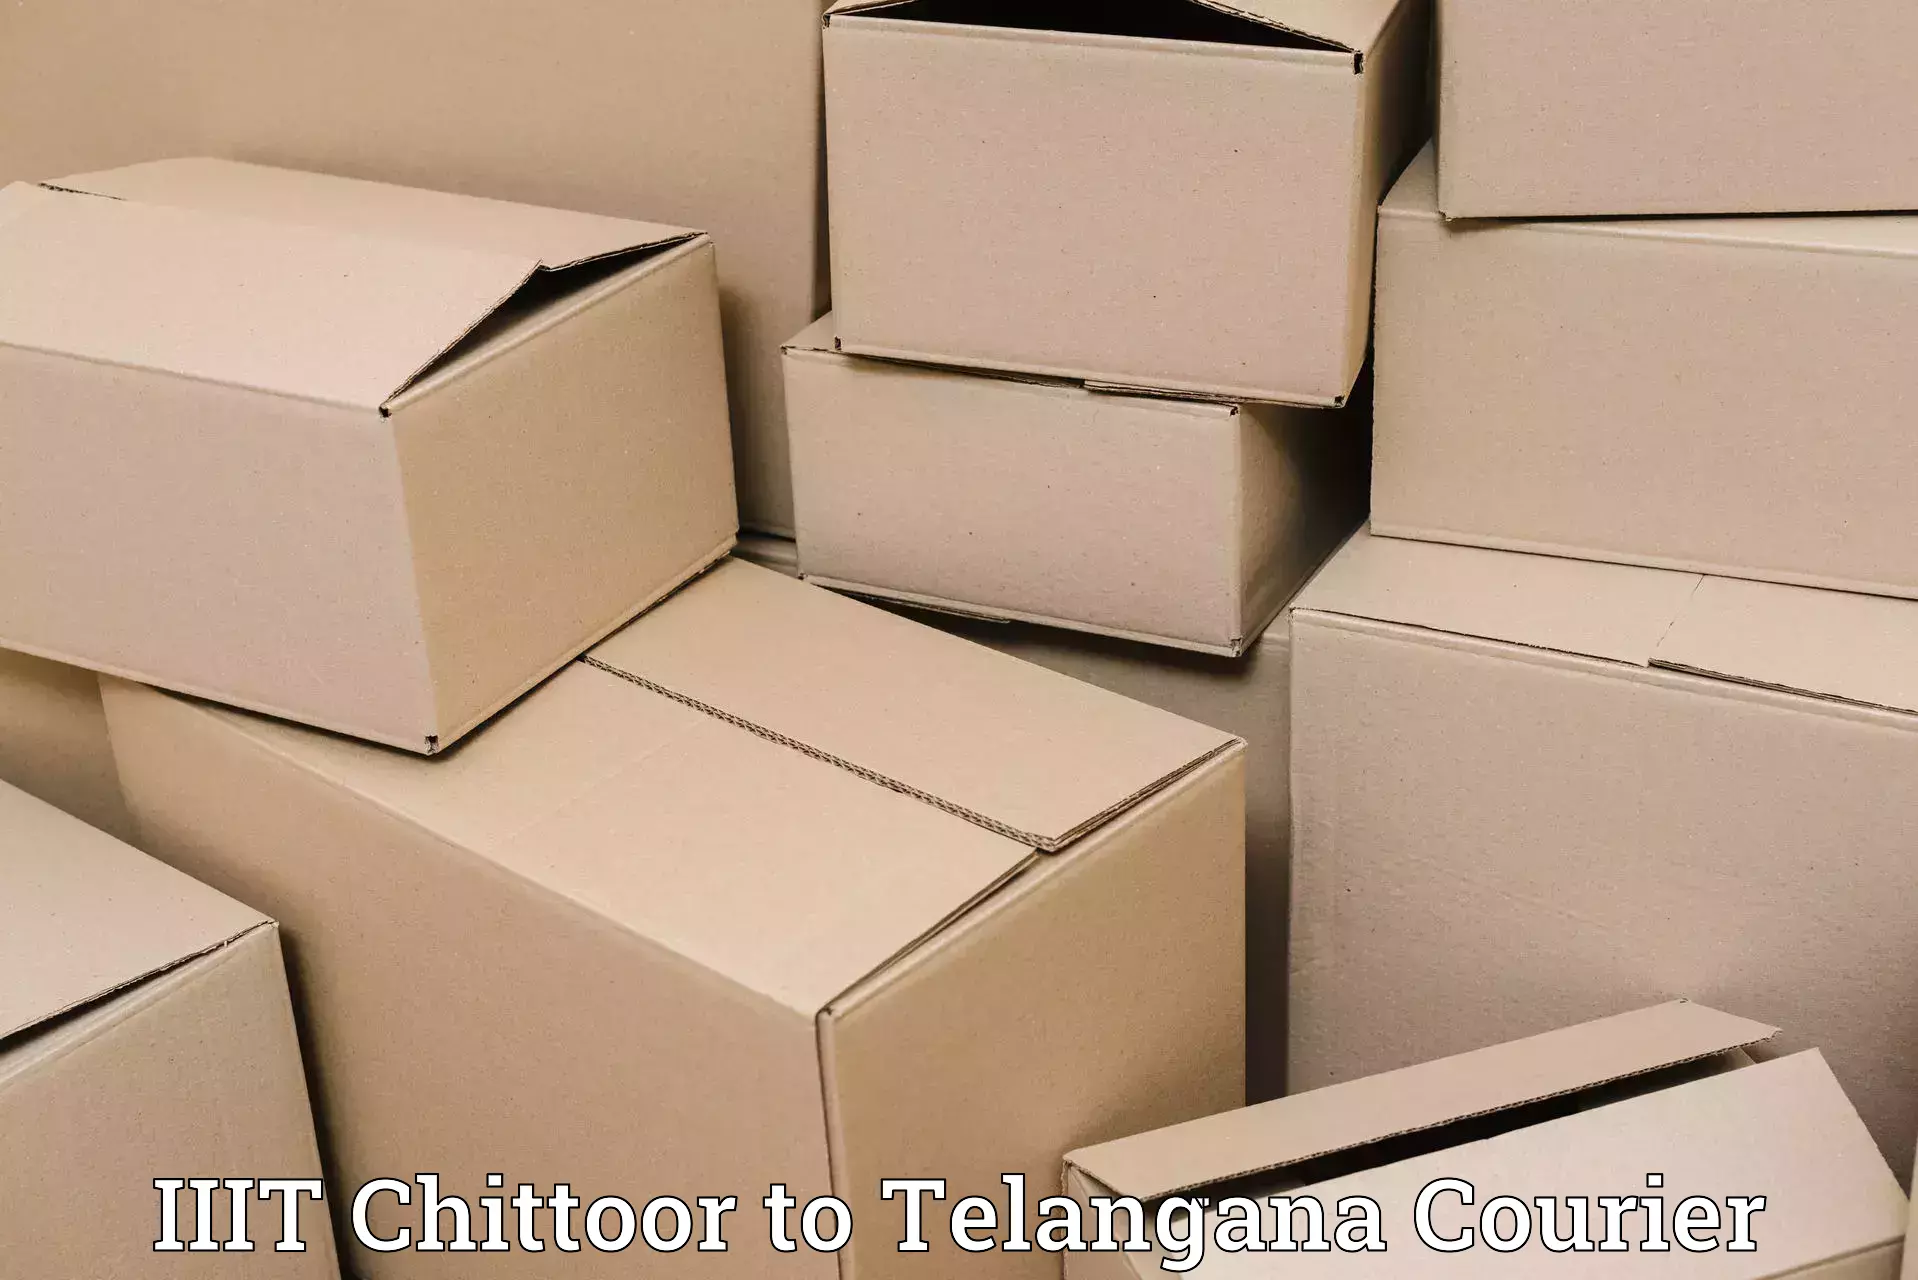 Efficient shipping platforms IIIT Chittoor to Chandur